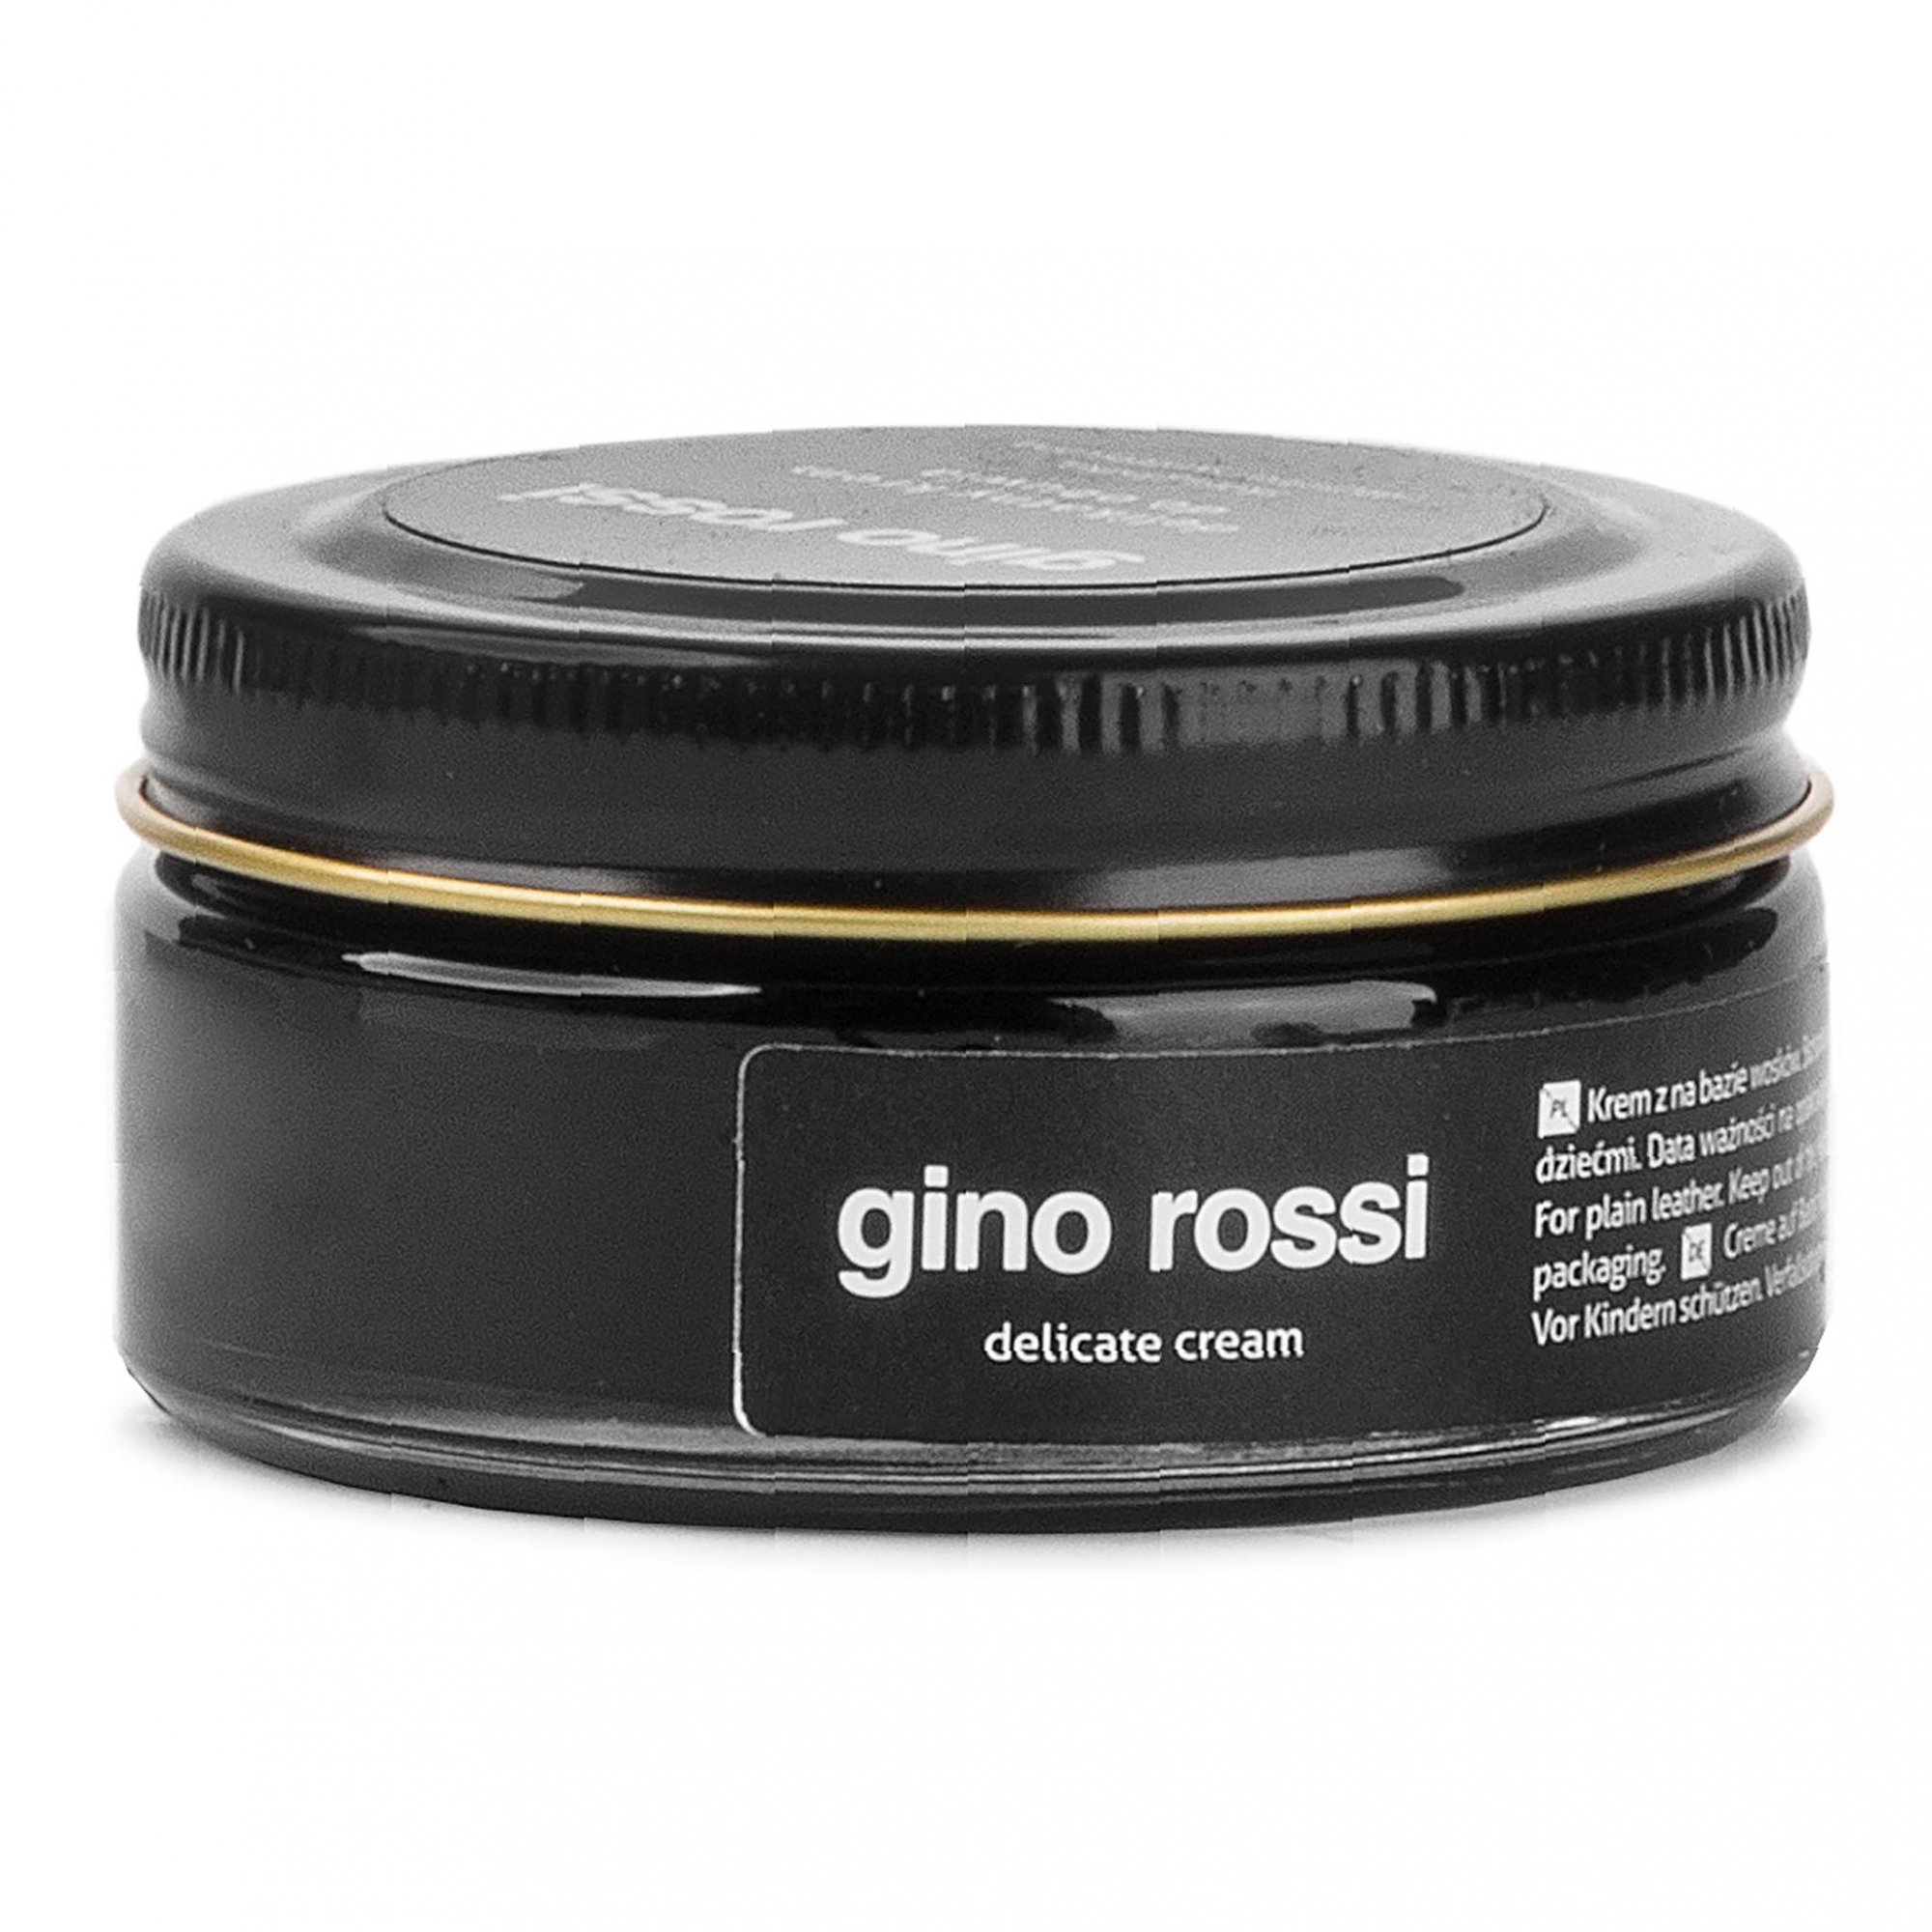 Gino Rossi S00048-KAP-XXXX-9900